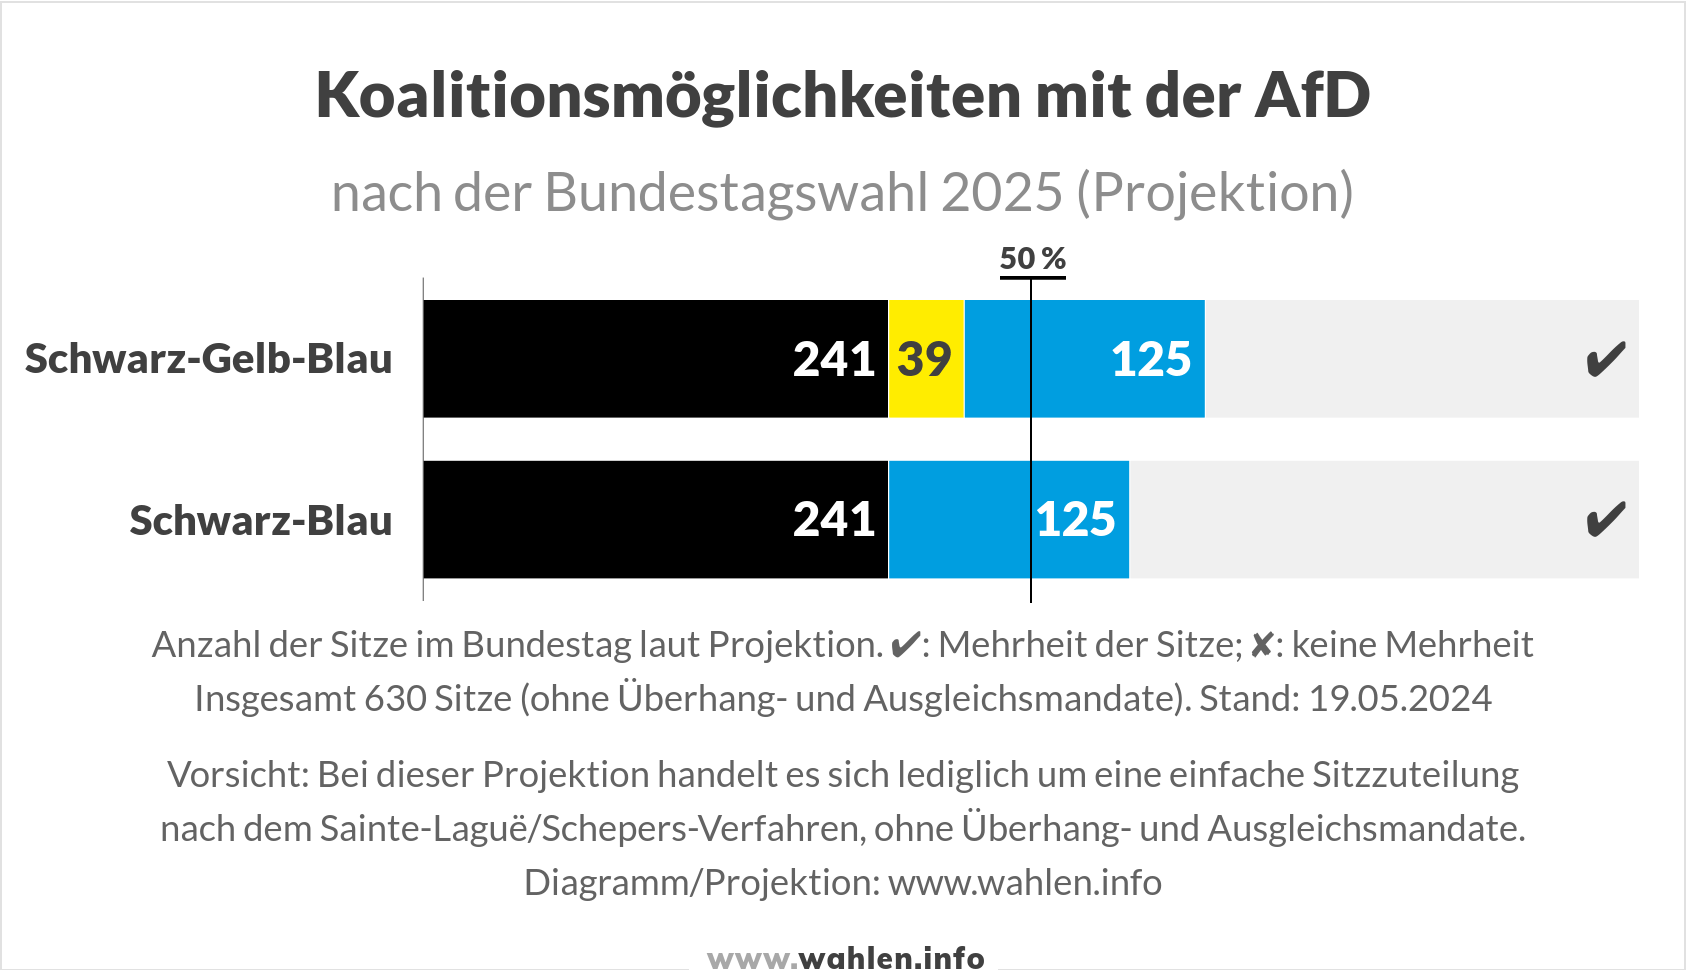 Bundestagswahl - Koalition mit der AfD